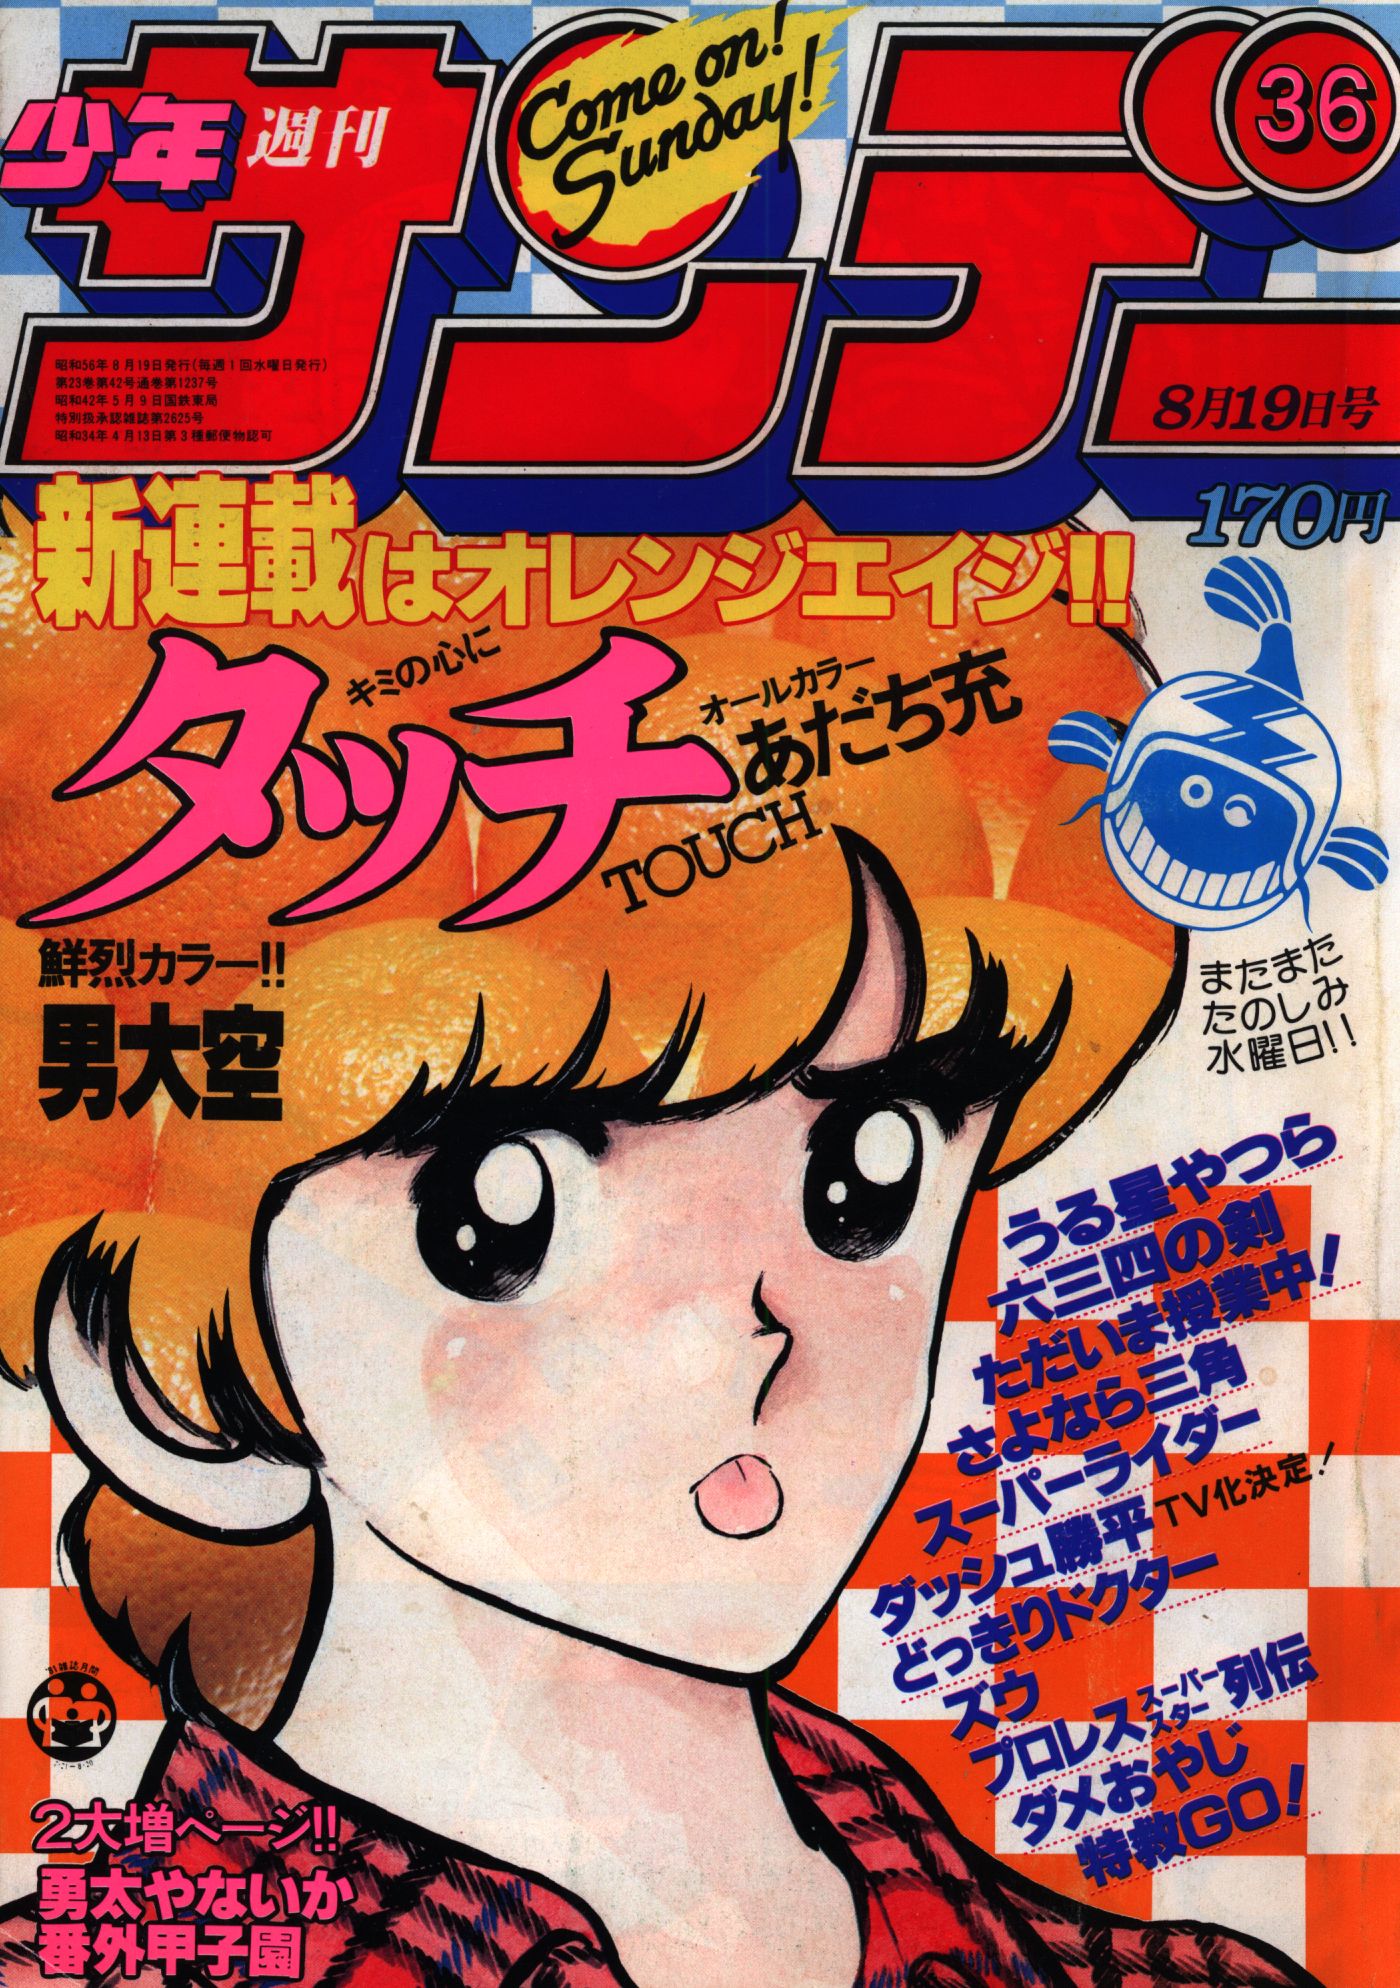 小学館 1981年(昭和56年)の漫画雑誌 週刊少年サンデー1981年(昭和56年